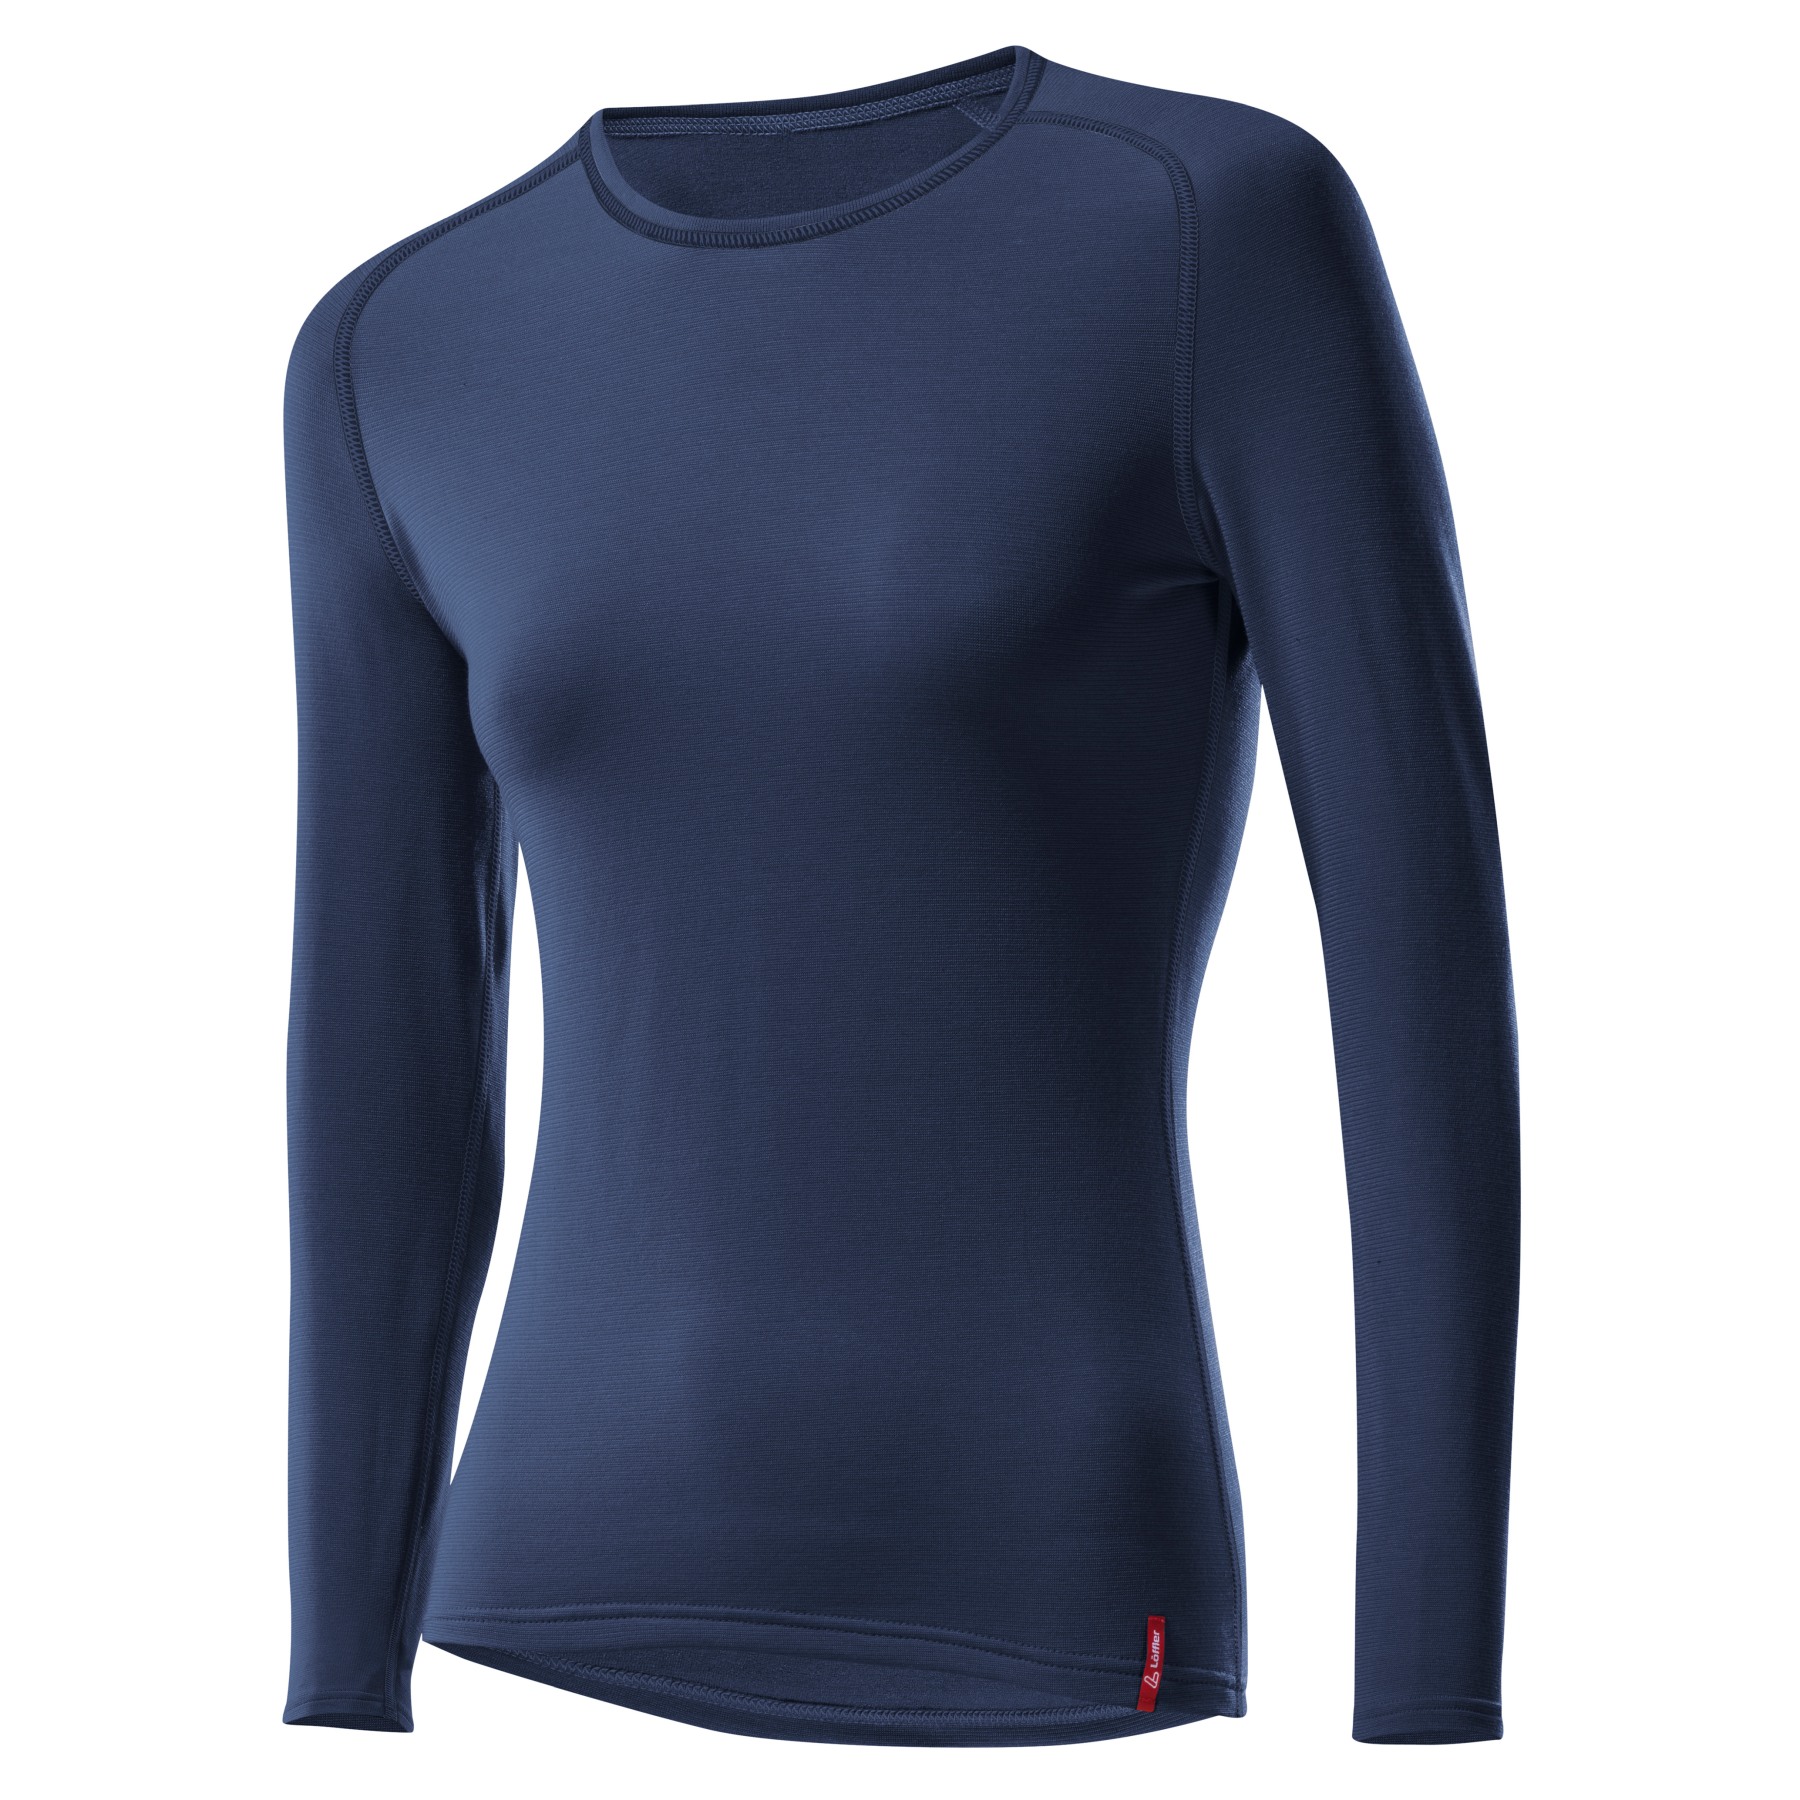 Produktbild von Löffler Transtex® Warm Langarm-Unterhemd Damen - dunkelblau 495